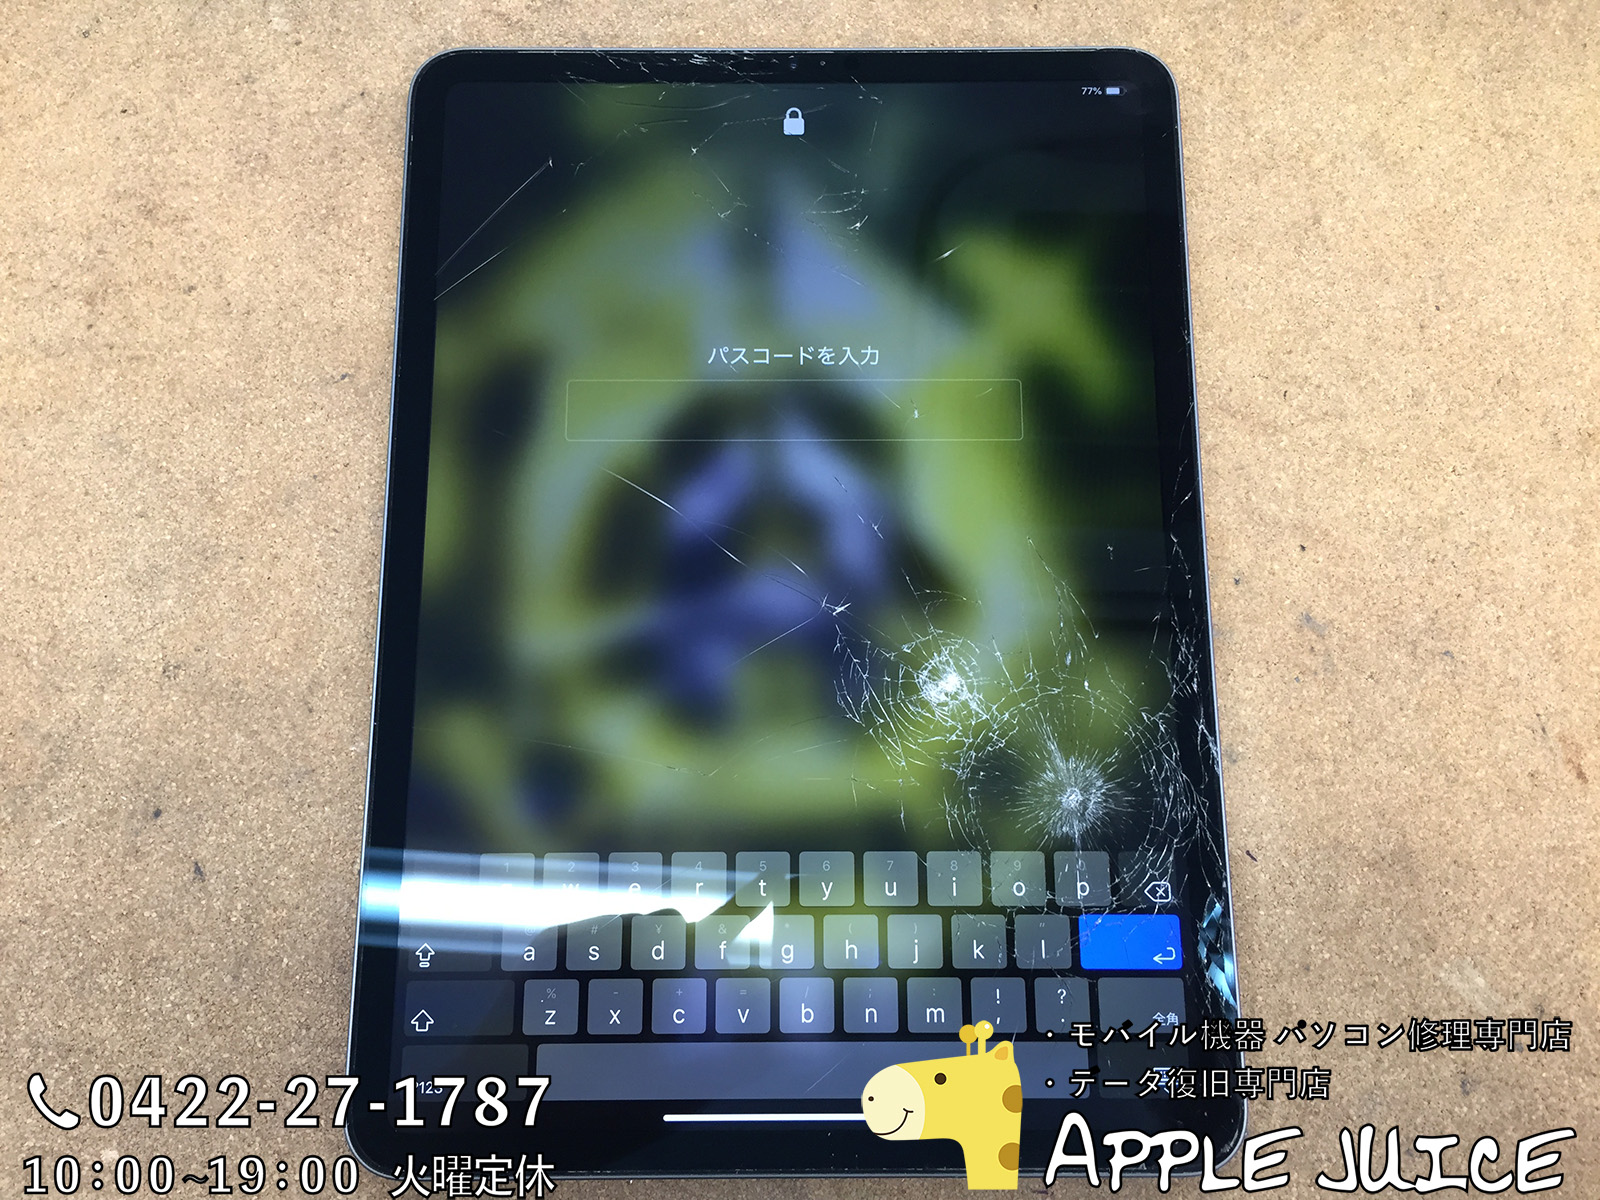 2時間でデータそのままでipad Pro11inch A1979 A1980 のガラス割れを修理できます Iphone Ipad Ipod Mac修理 データ復旧 基板修理 Applejuice吉祥寺店